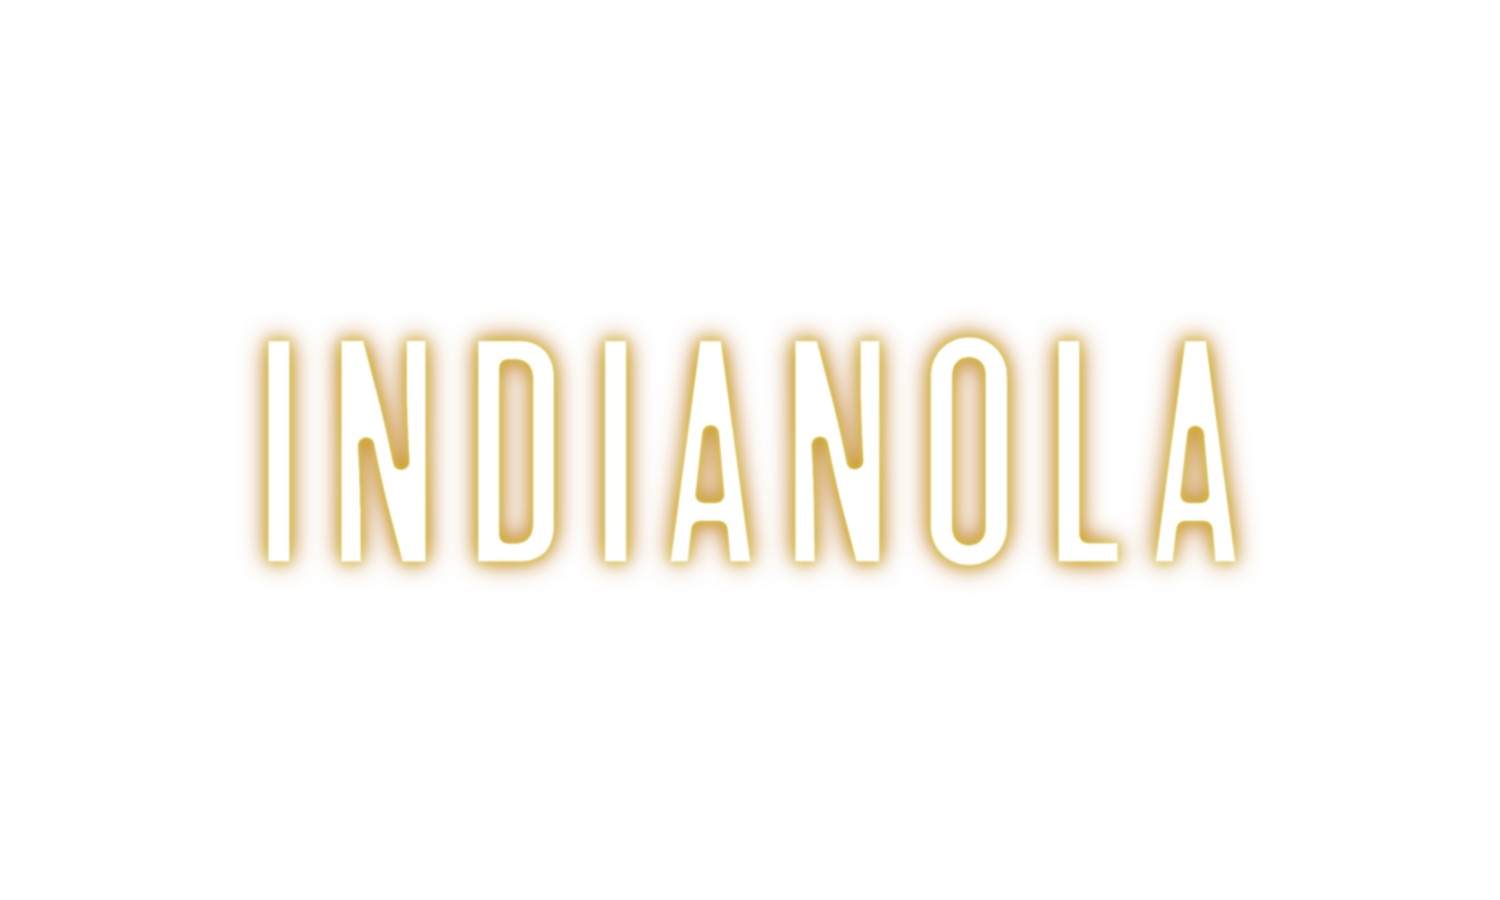 Indianola